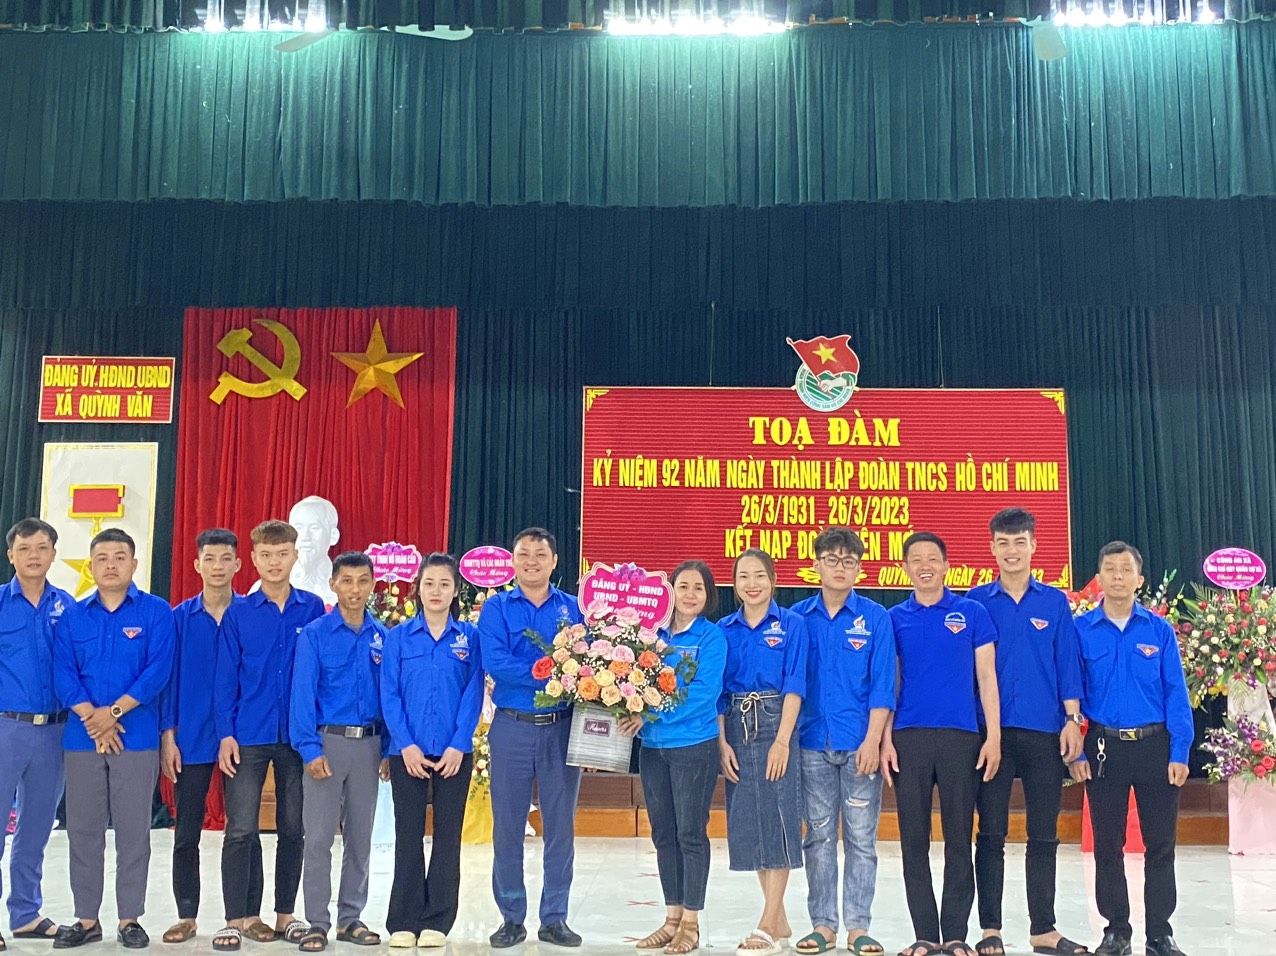 Đoàn xã Quỳnh Văn Tọa đàm kỷ niệm 92 năm ngày thành lập Đoàn TNCS Hồ Chí Minh